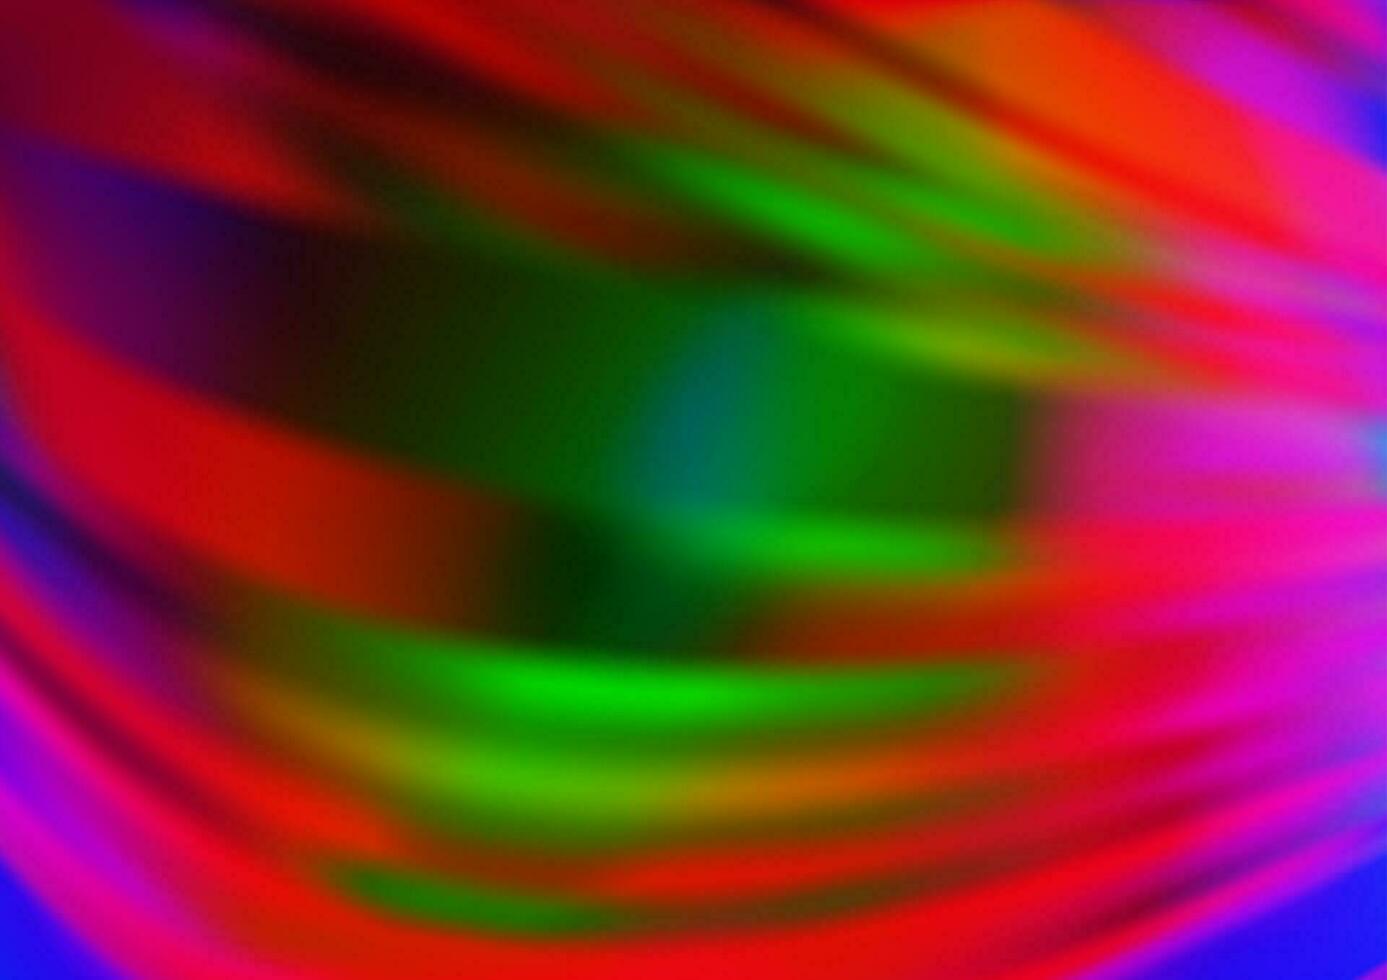 luce multicolore, modello astratto di vettore arcobaleno.